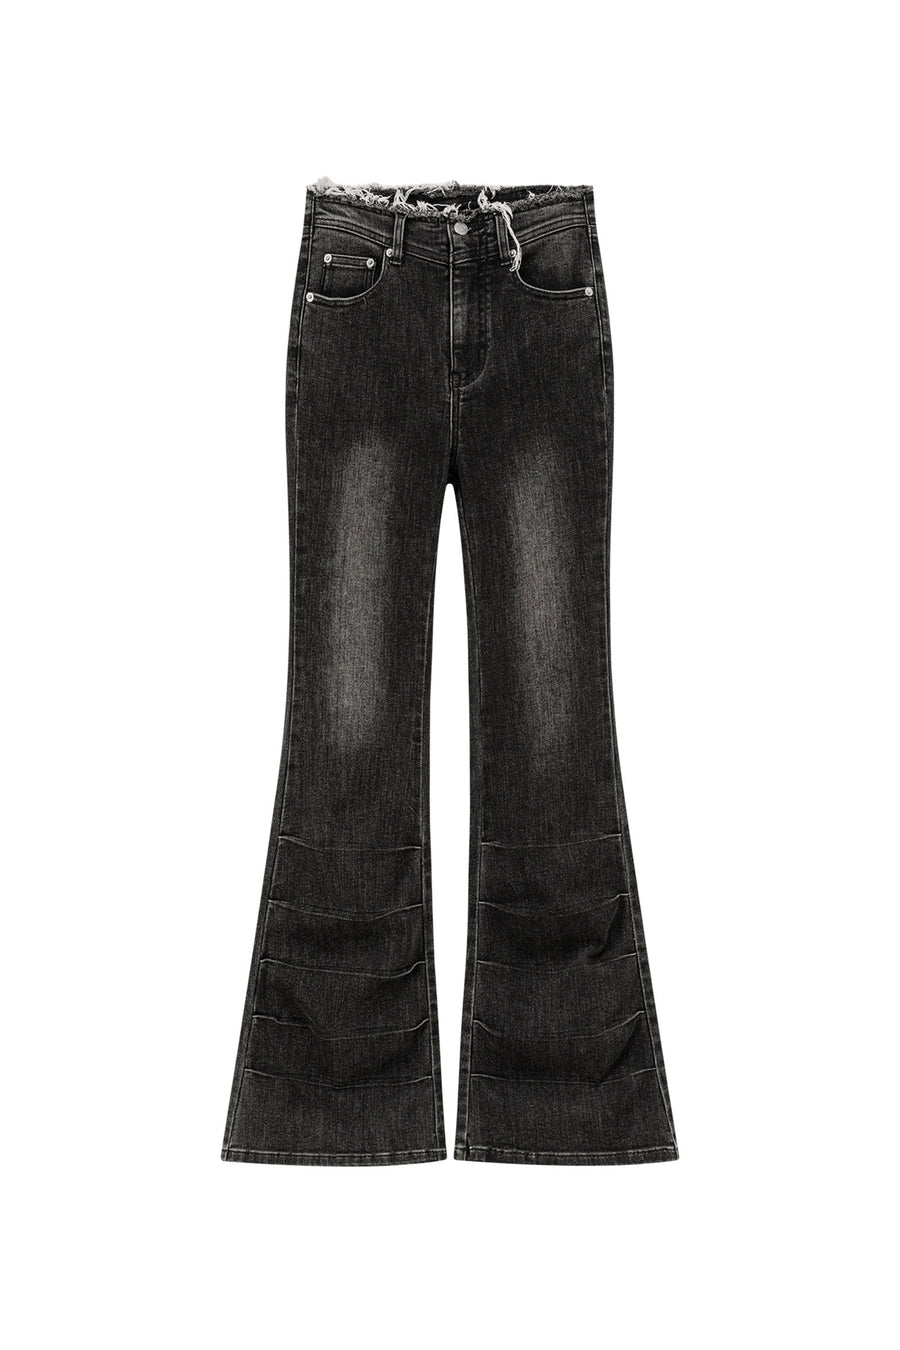 CHUU High Waist Semi Bootcut Jeans